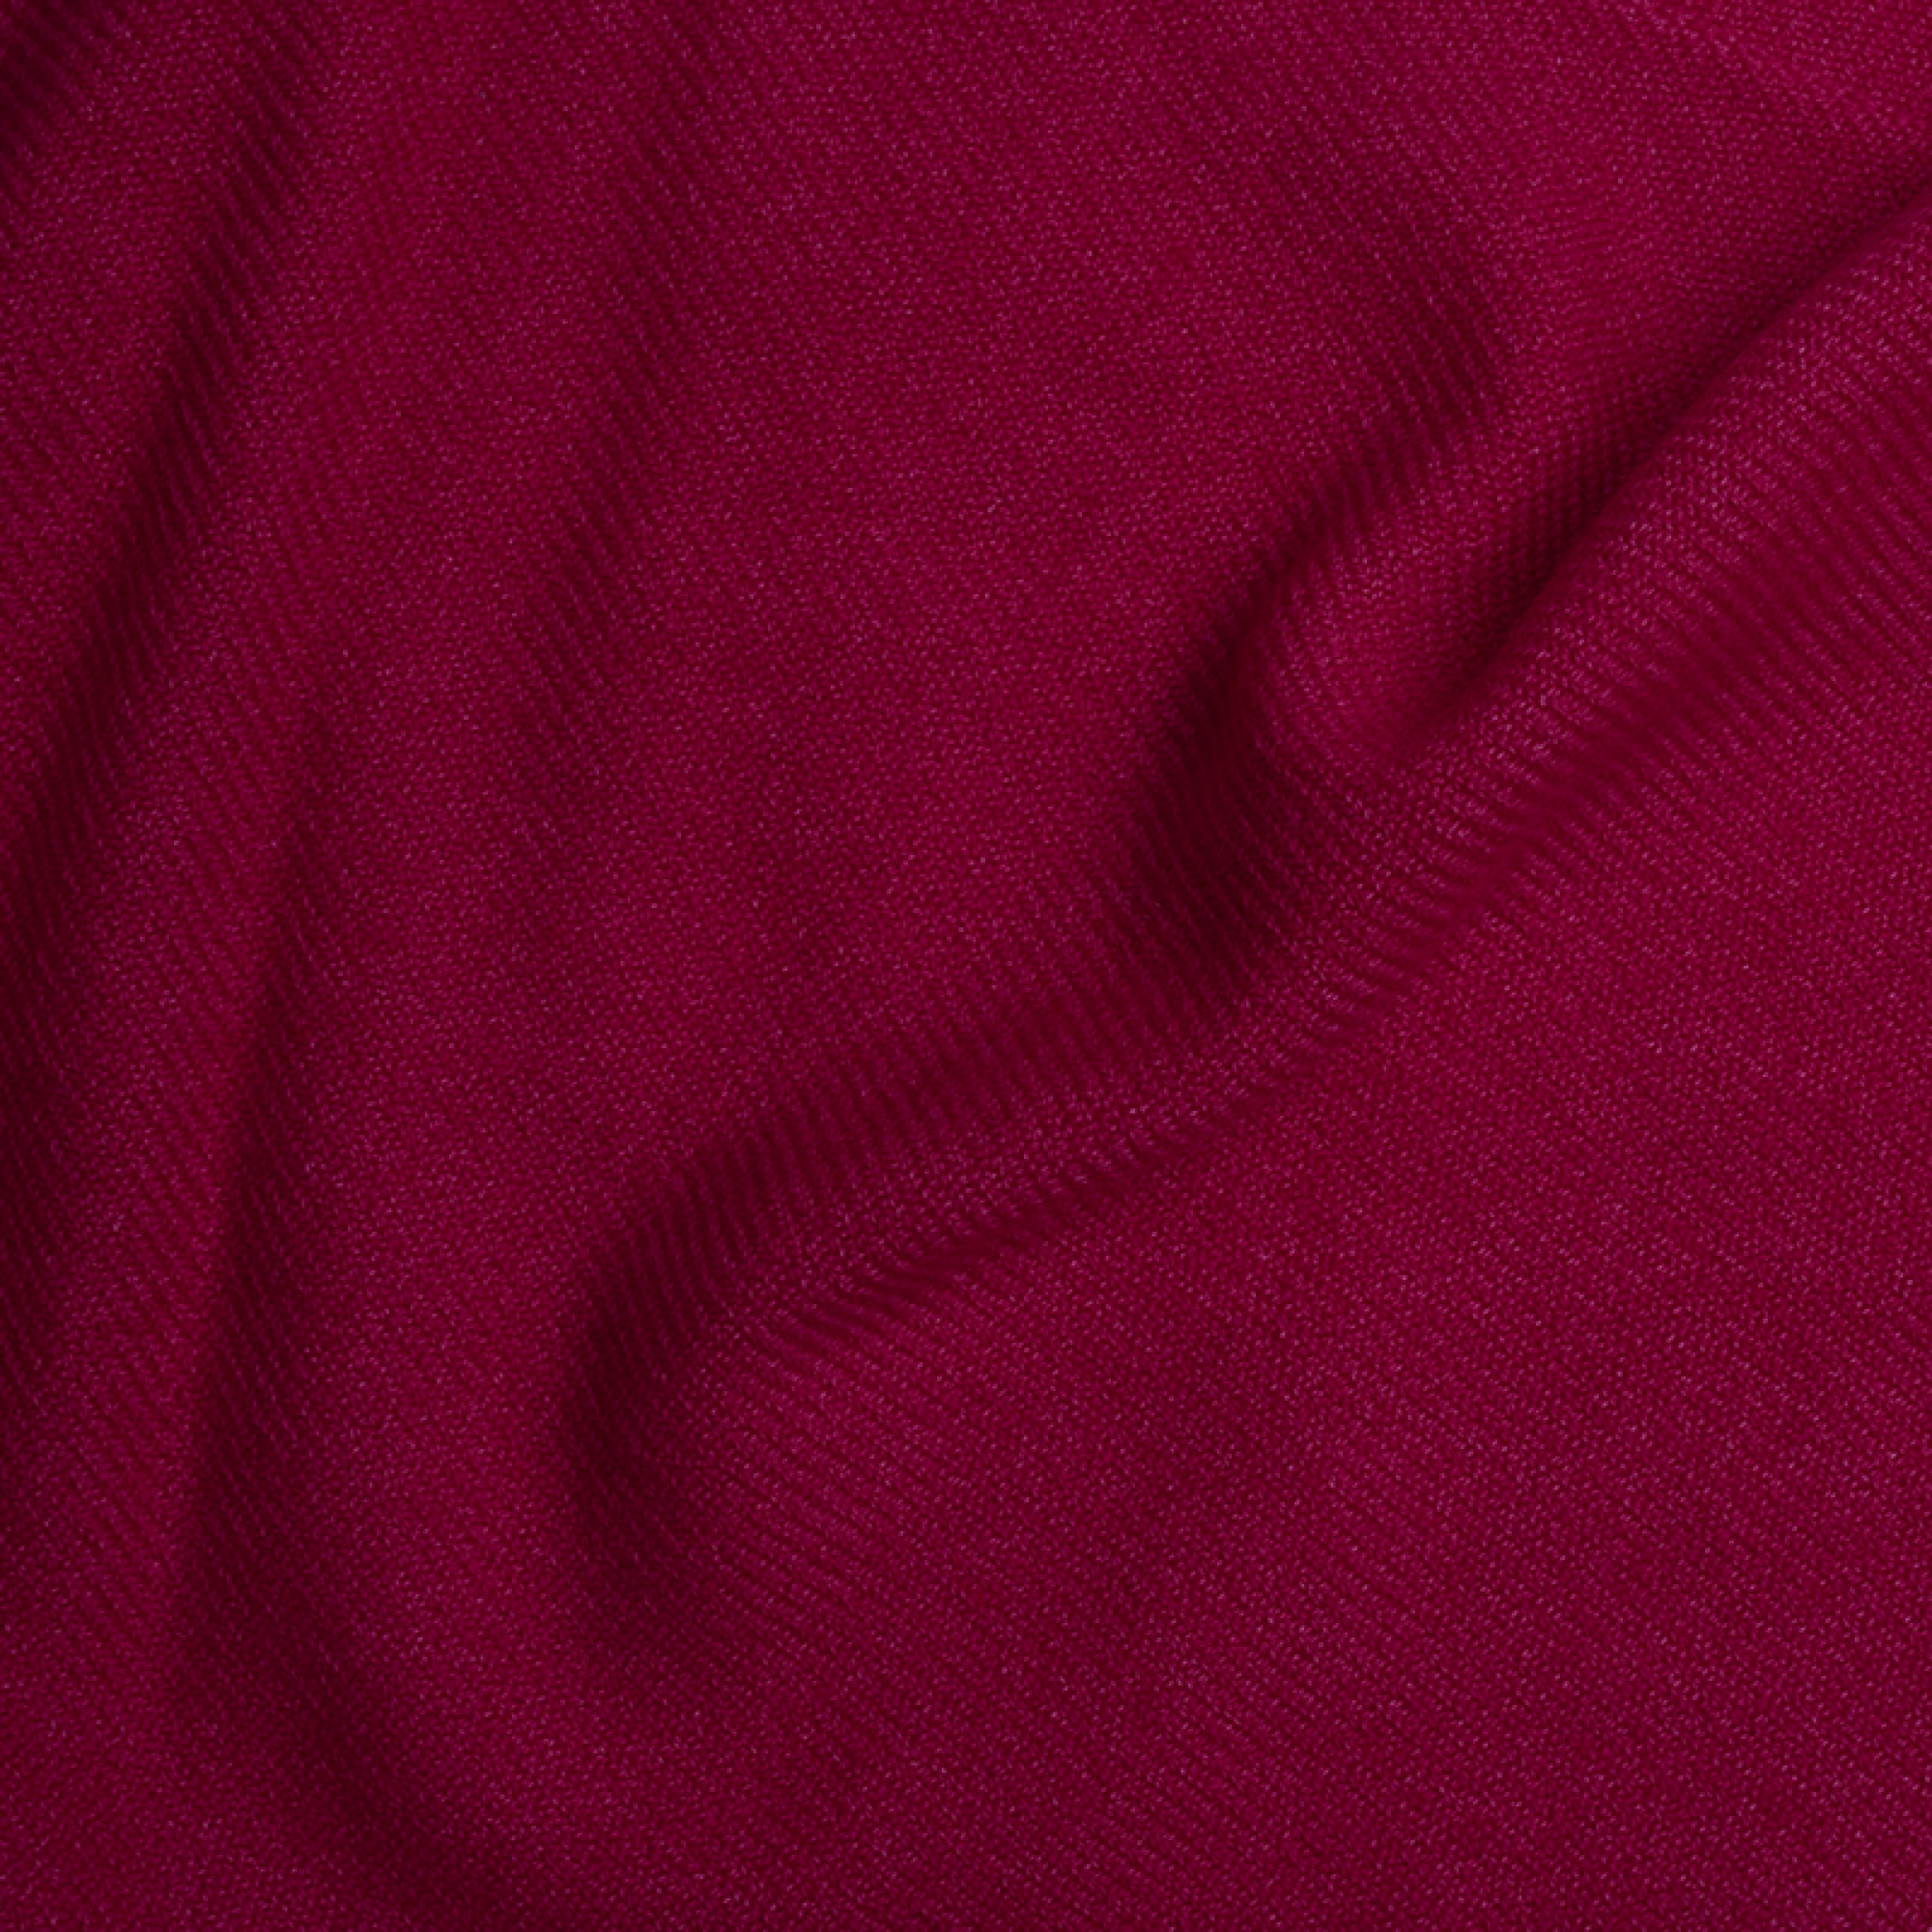 Cachemire accessoires couvertures plaids toodoo plain s 140 x 200 rose passion 140 x 200 cm